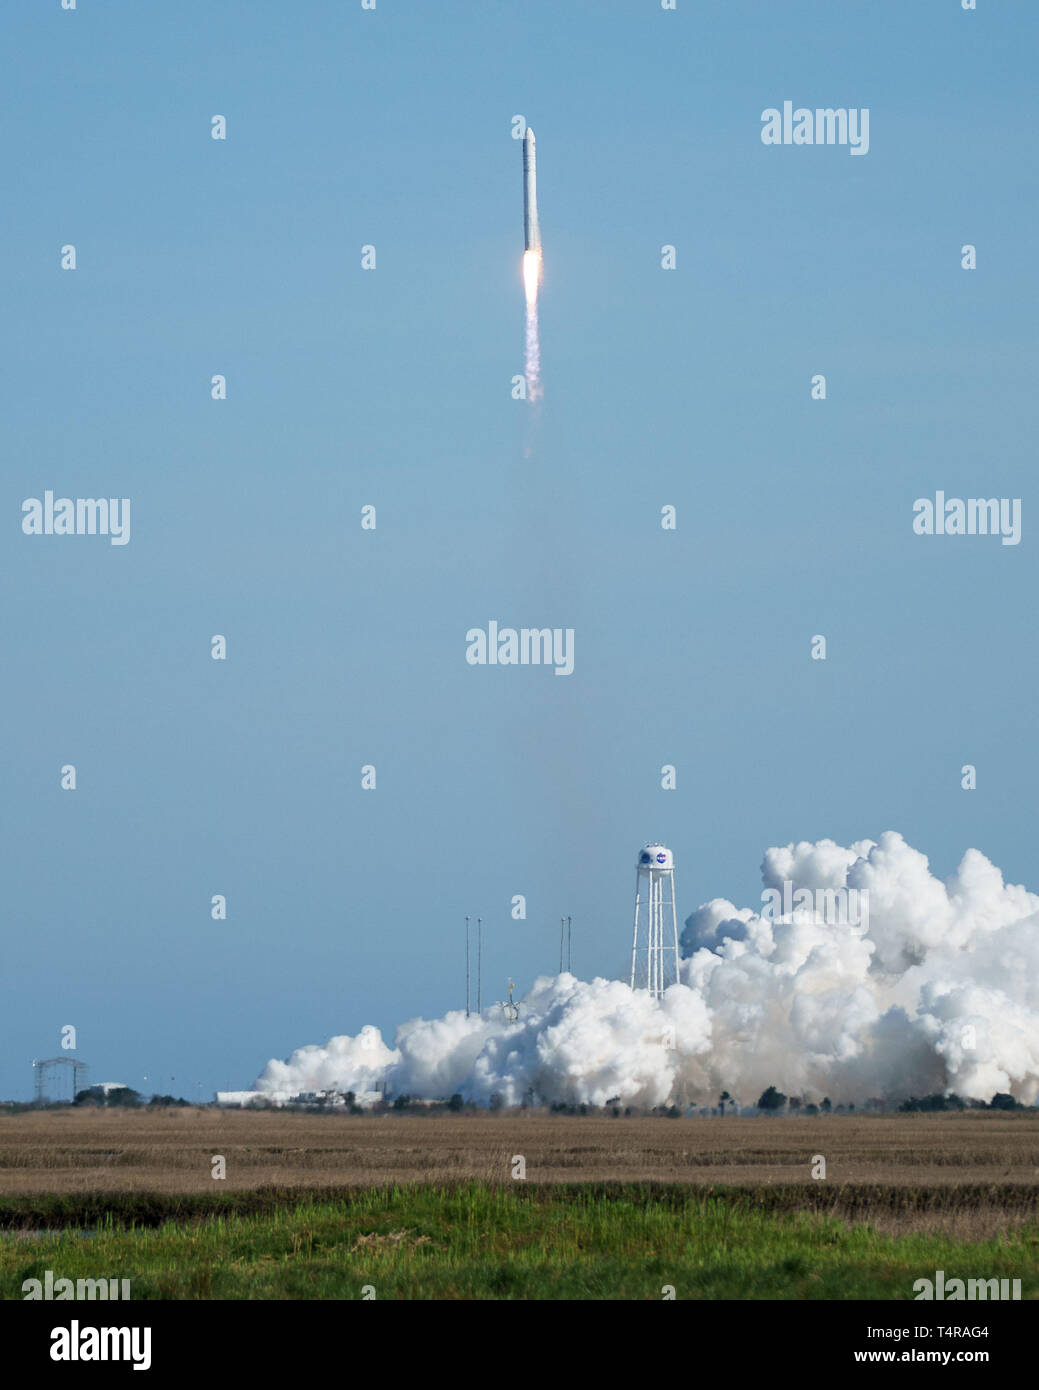 En la Isla Wallops, Virginia, EE.UU. 17 abr, 2019. El cohete Antares Cygnus llevando la nave espacial de carga se levanta desde las Instalaciones de Vuelo Wallops de la NASA en Wallops Island, Virginia, en los Estados Unidos, el 17 de abril de 2019. Se lanzó un cohete de EE.UU. este miércoles a partir de las Instalaciones de Vuelo Wallops de la NASA en la Costa Oriental de Virginia, transportar carga con la agencia espacial la misión de reabastecimiento de la Estación Espacial Internacional (ISS). El Antares cohete construido por Northrop Grumman levantado a las 4:46 P.M. EDT, llevando el Cygnus naves espaciales de carga a la ISS. Crédito: Xinhua/Alamy Live News Foto de stock